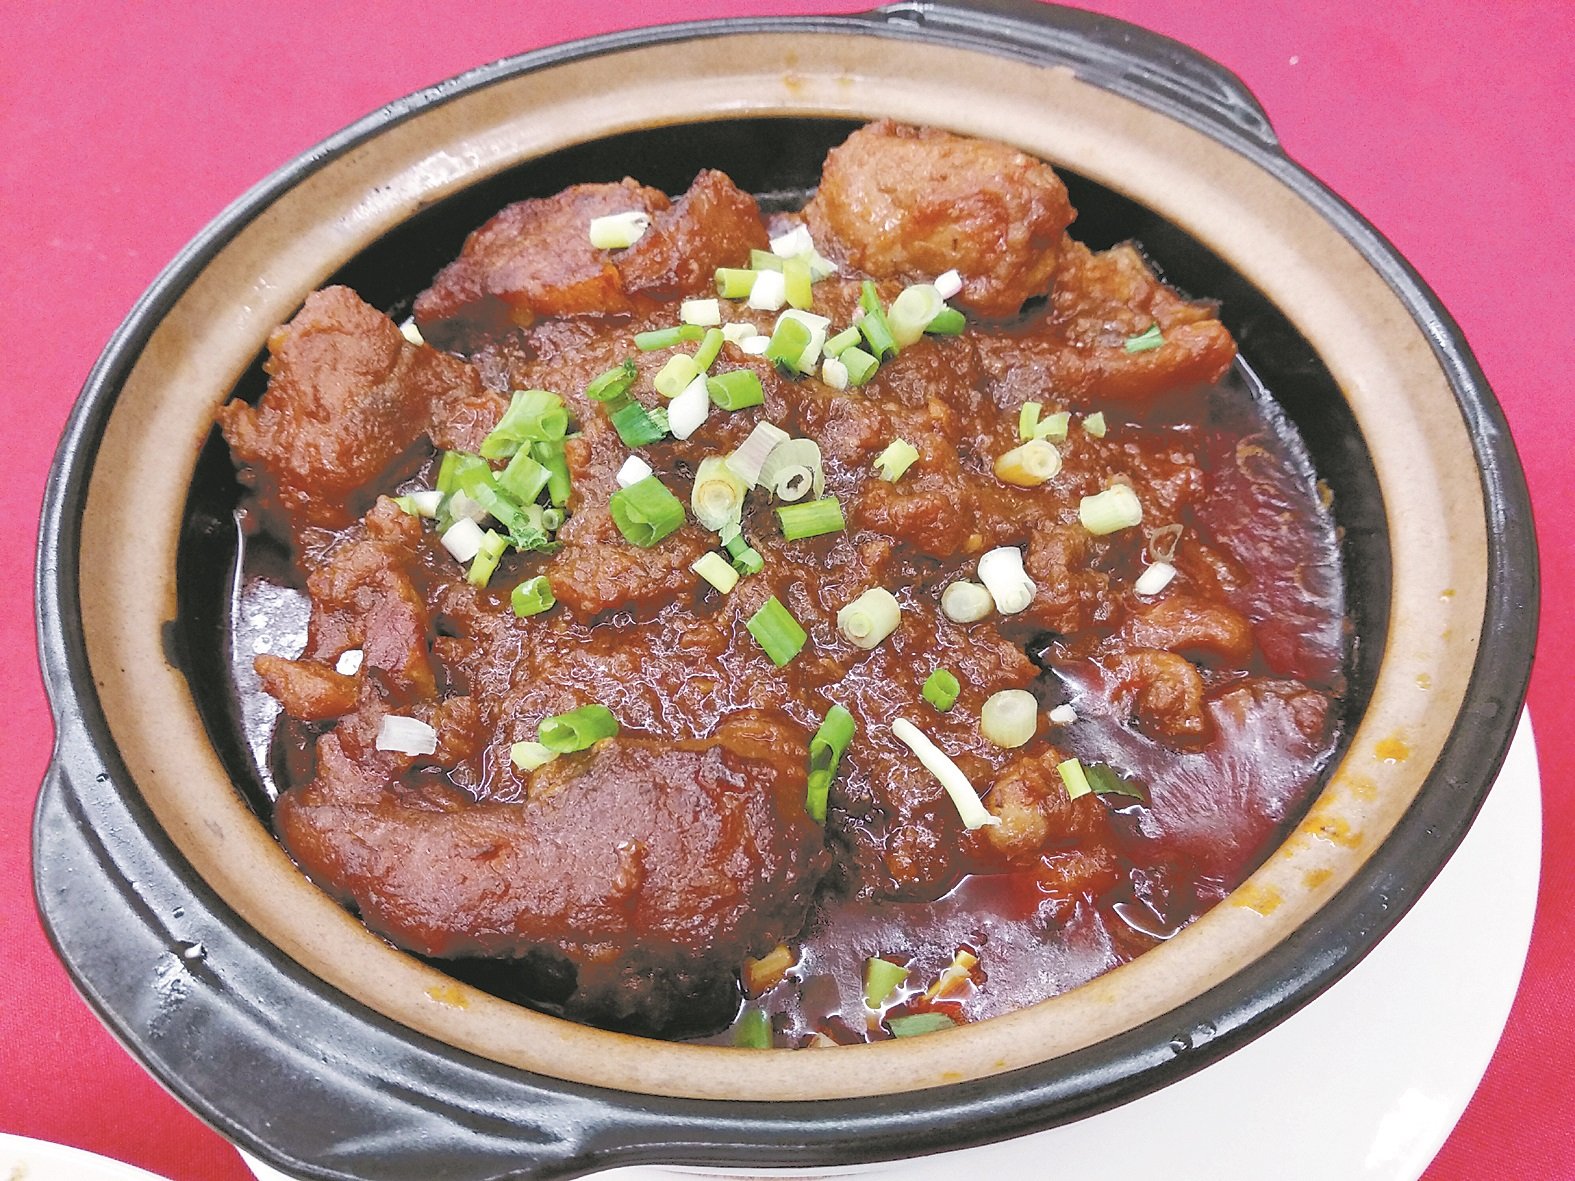 阿嬷传下来的客家猪脚食谱，与常见的黑醋姜口味不一样，也是林靖坚持传承的好味道。